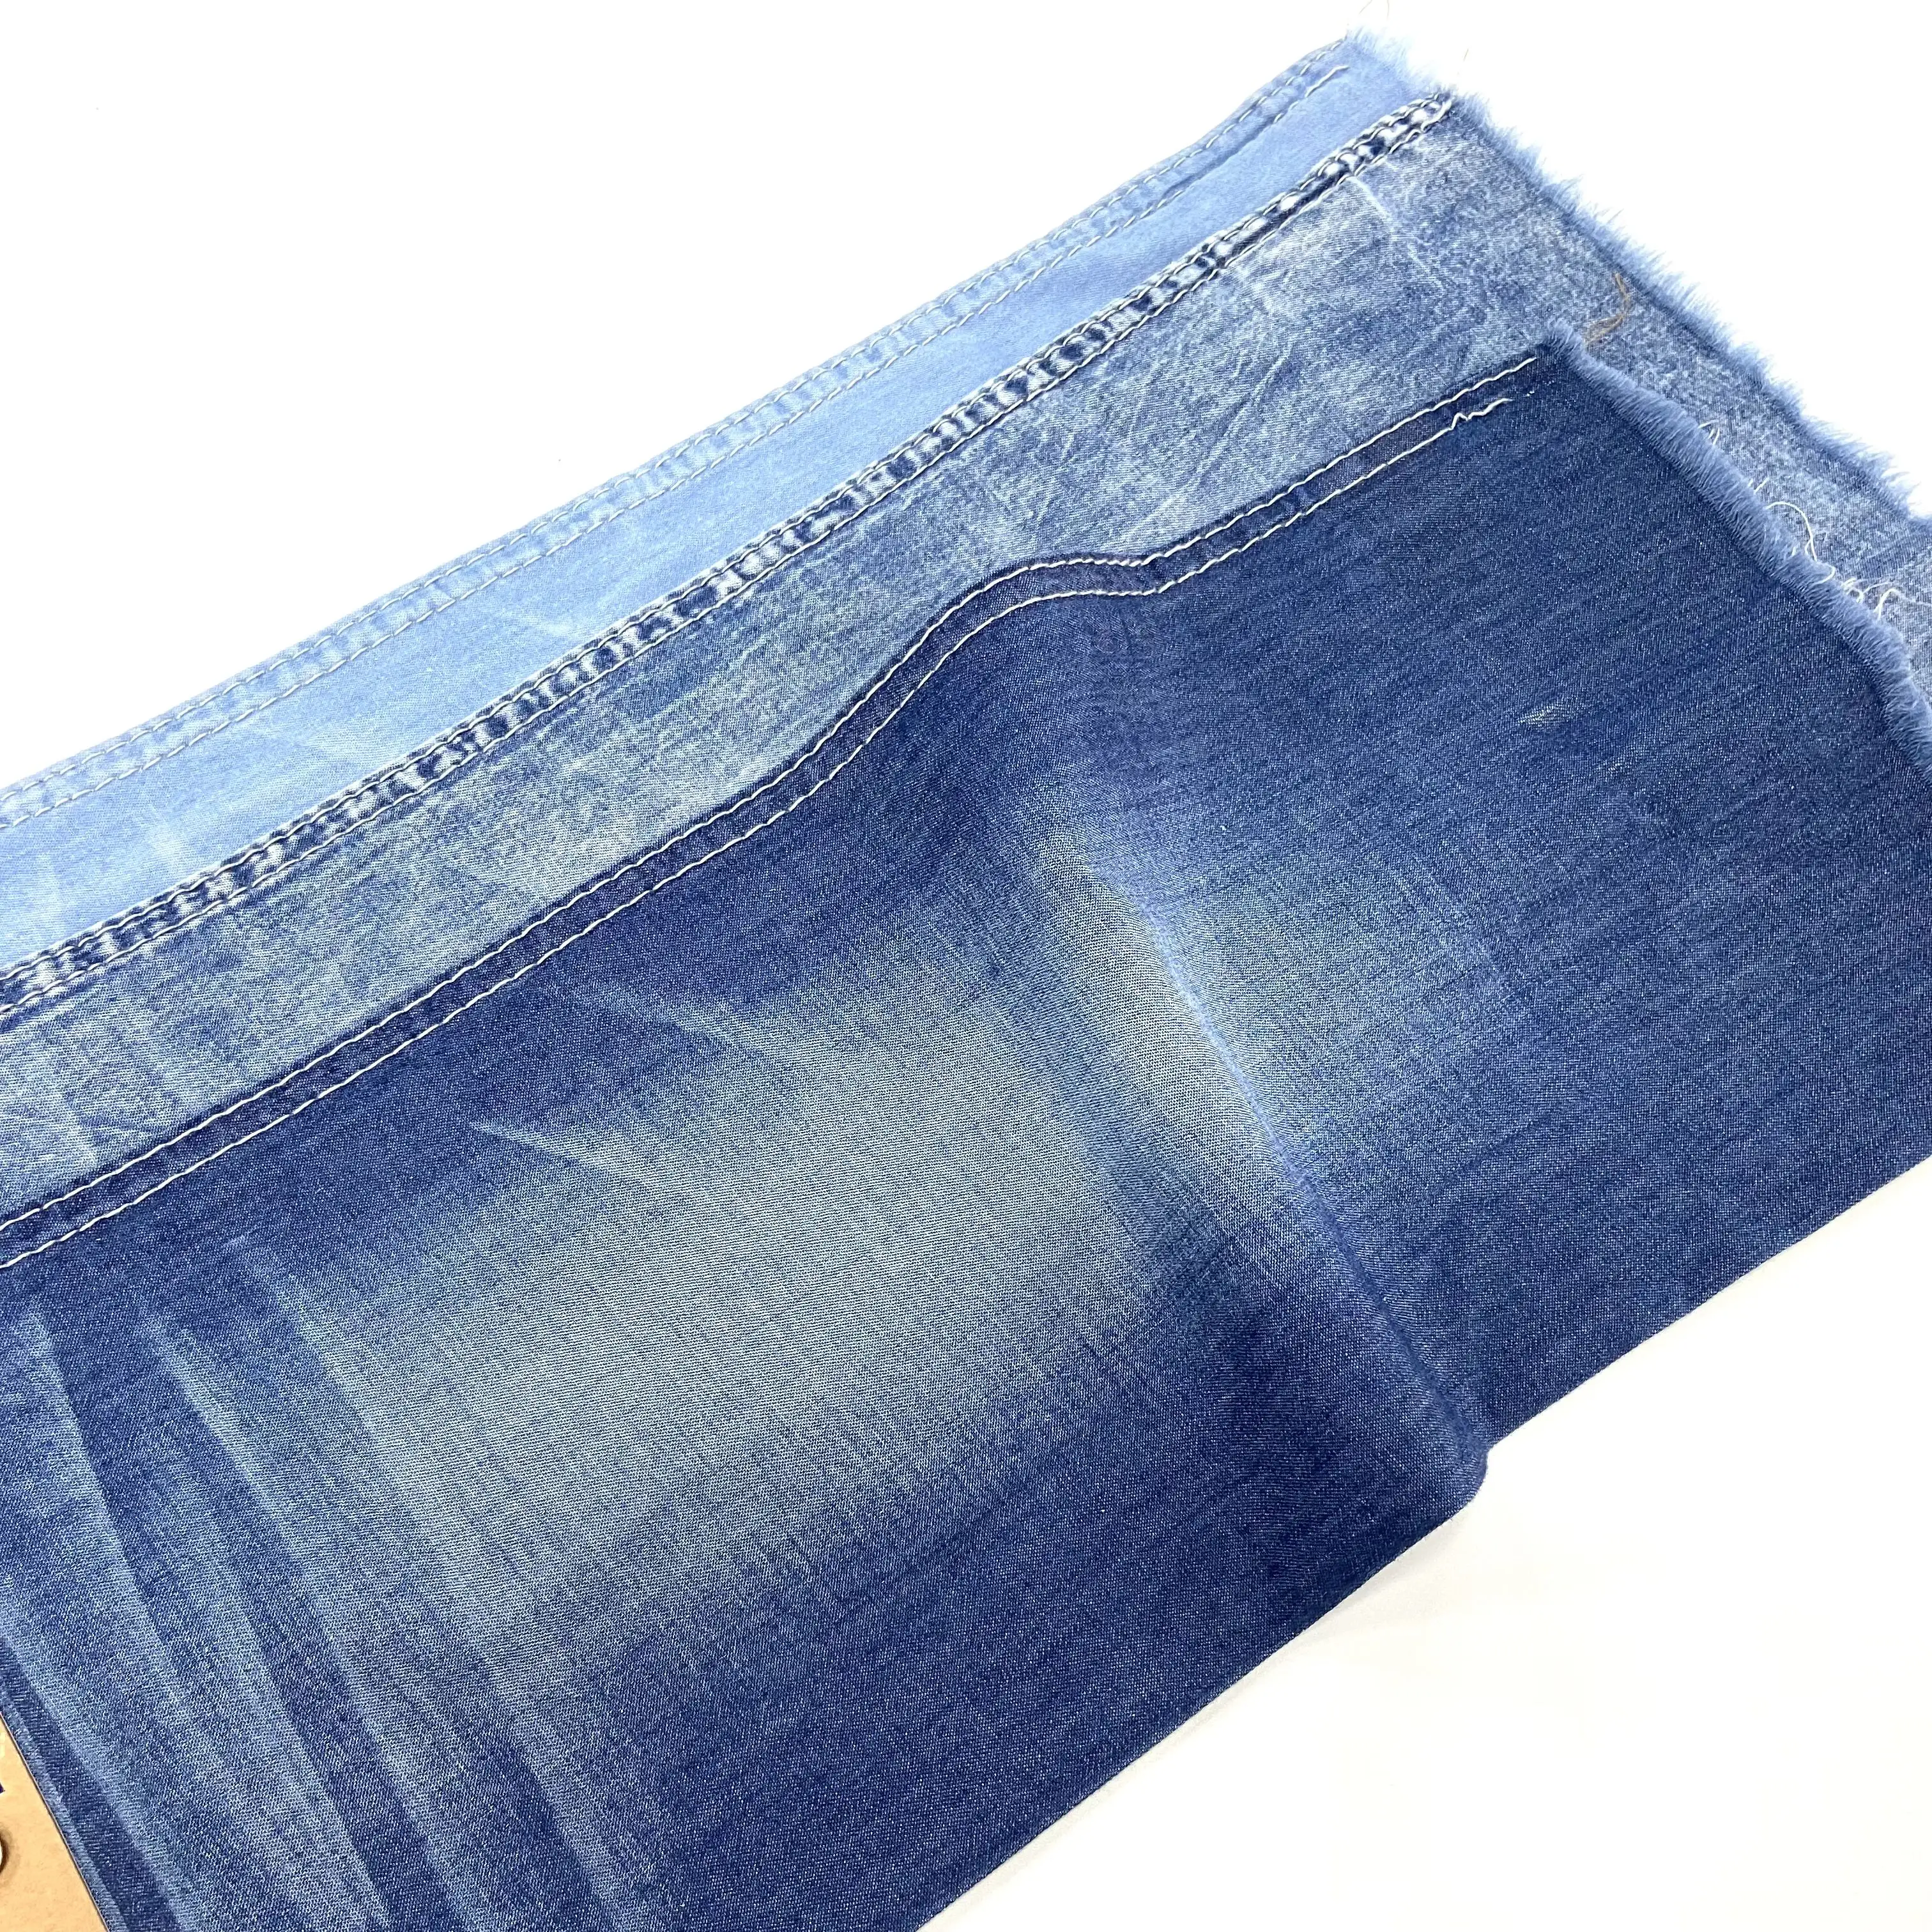 Оптовая продажа, сертифицированная натуральная красящая Органическая хлопковая трикотажная джинсовая ткань, 100 хлопок, легкая джинсовая ткань 4-5 унций